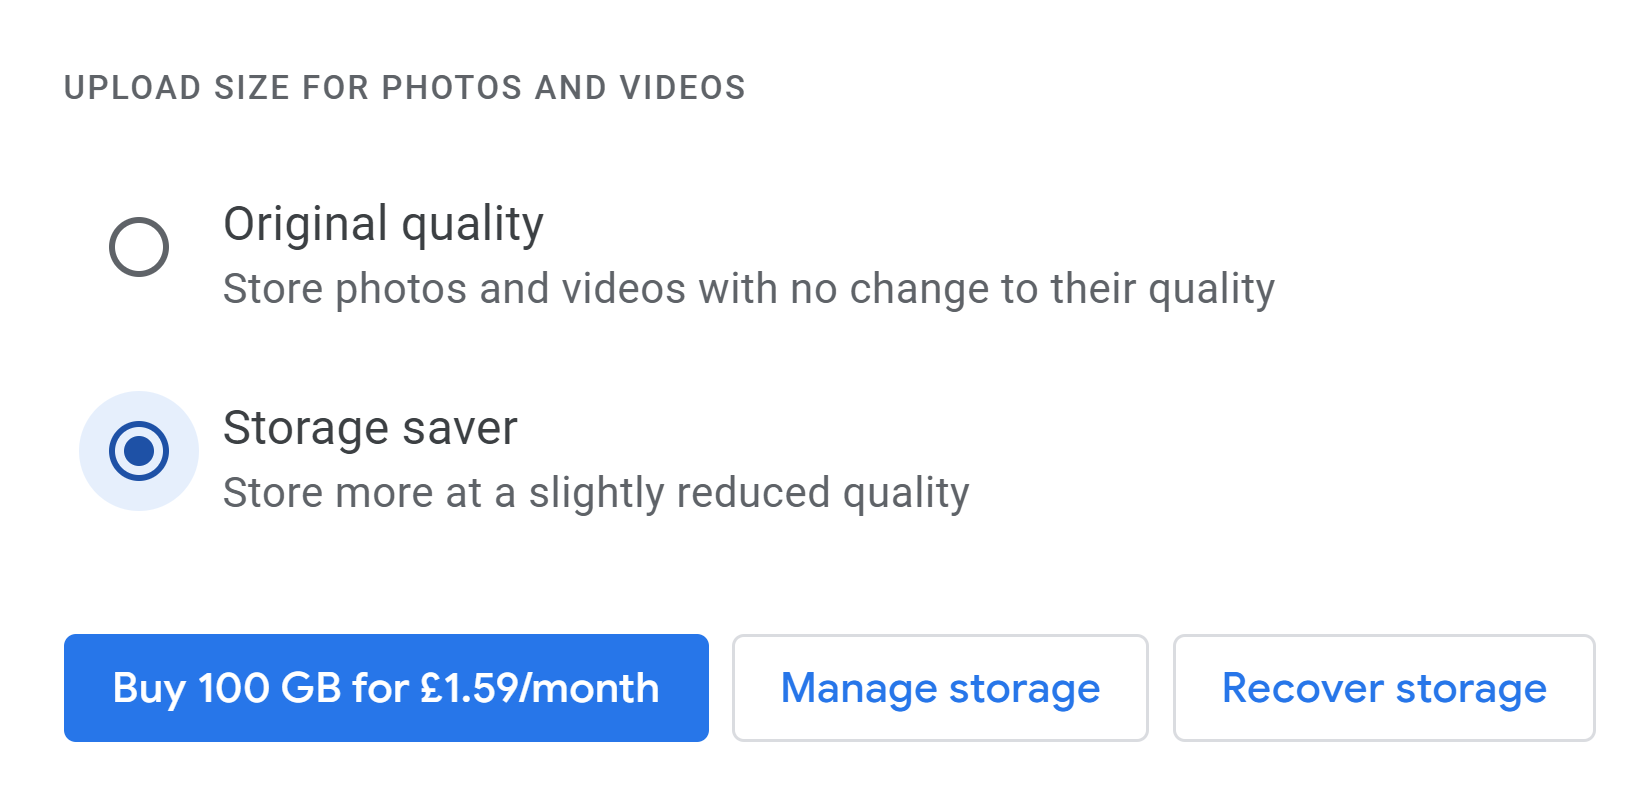 Google Photos Upload Size